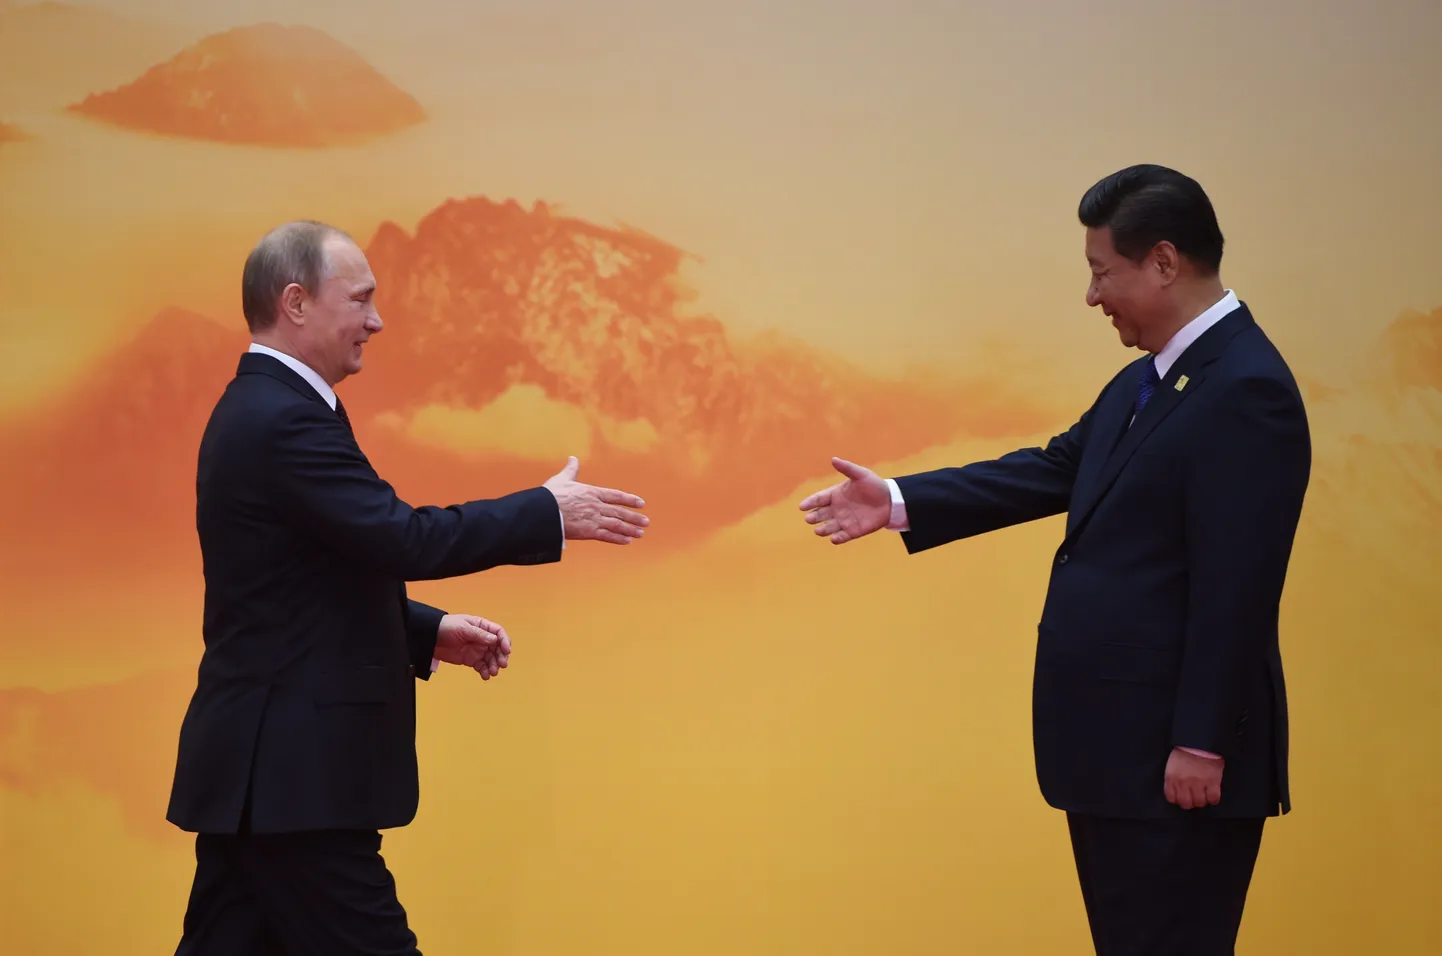 Vene president Vladimir Putin Hiina presidendi Xi Jinpingiga Pekingis Aasia-Vaikse ookeani majanduskoostööorganisatsiooni APEC juhtide kohtumisel kätlemas.